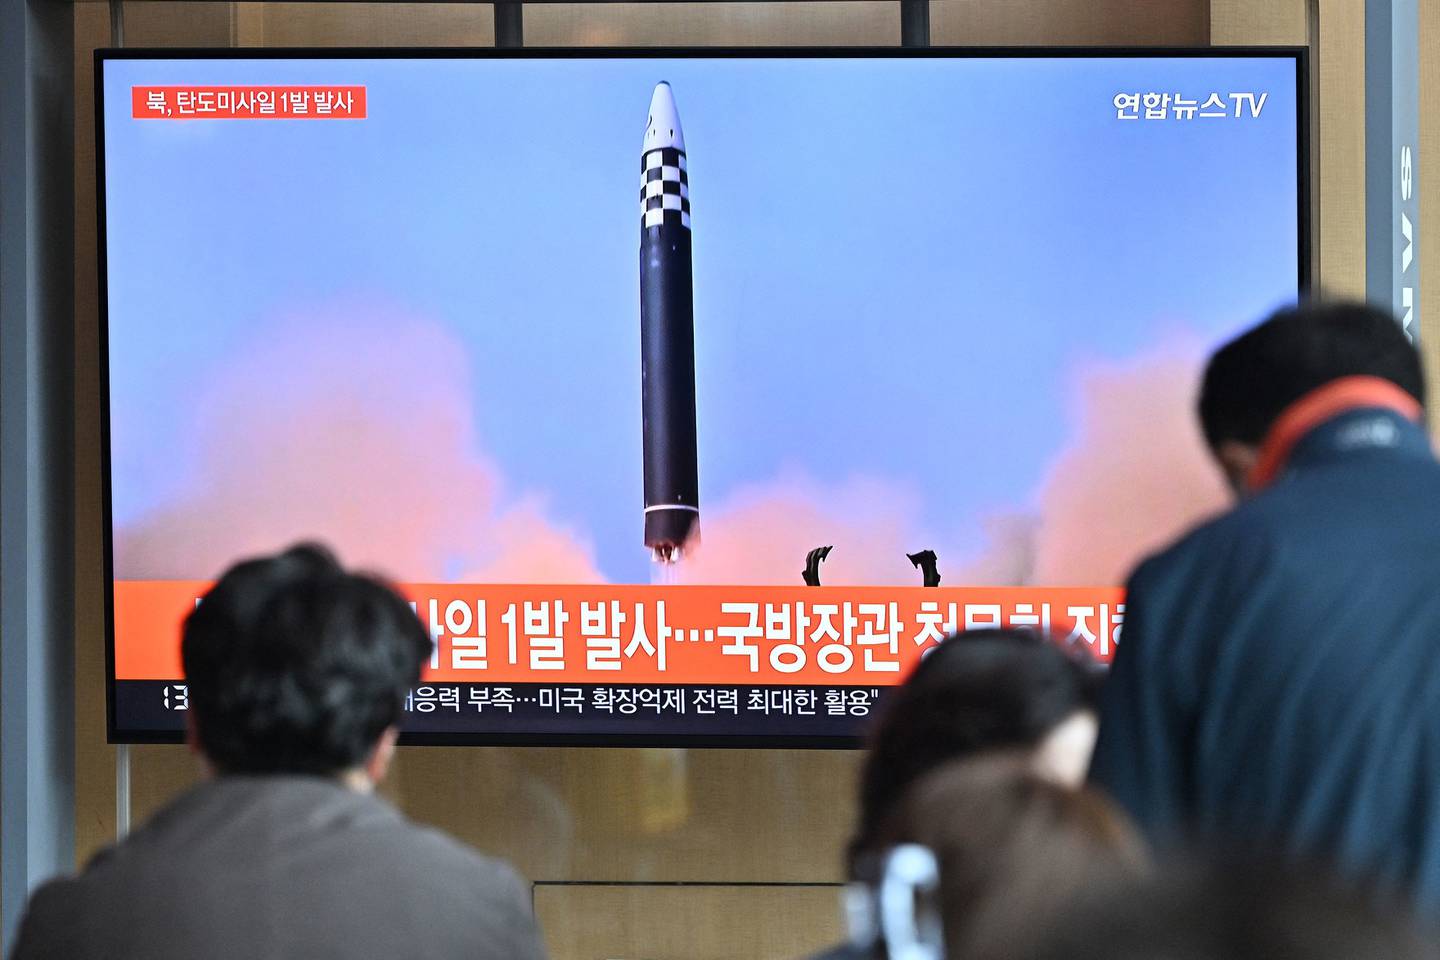 Imagen del lanzamiento de un misil en Corea del Norte